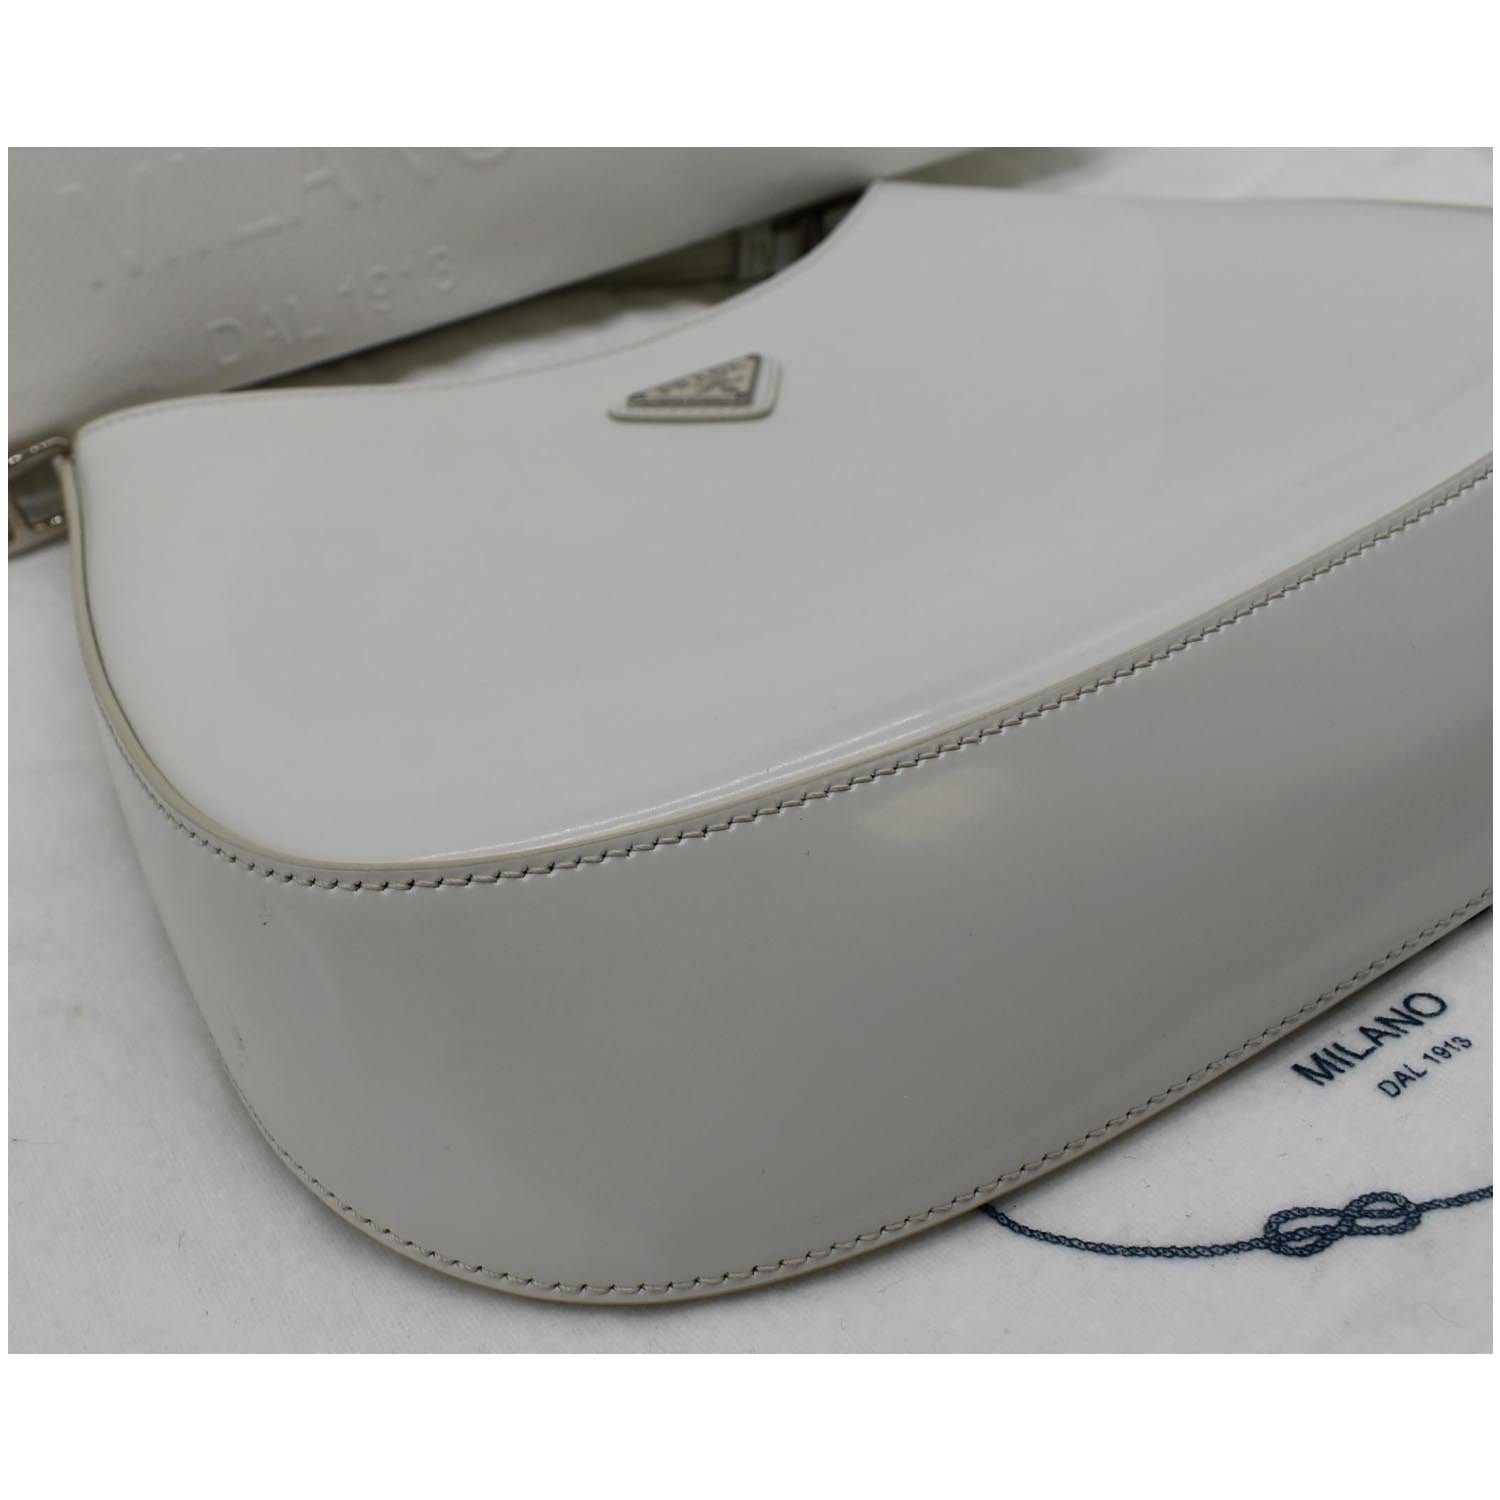 Prada, Bags, Prada Cleo White Bag Handbag Shoulder Purse Leather